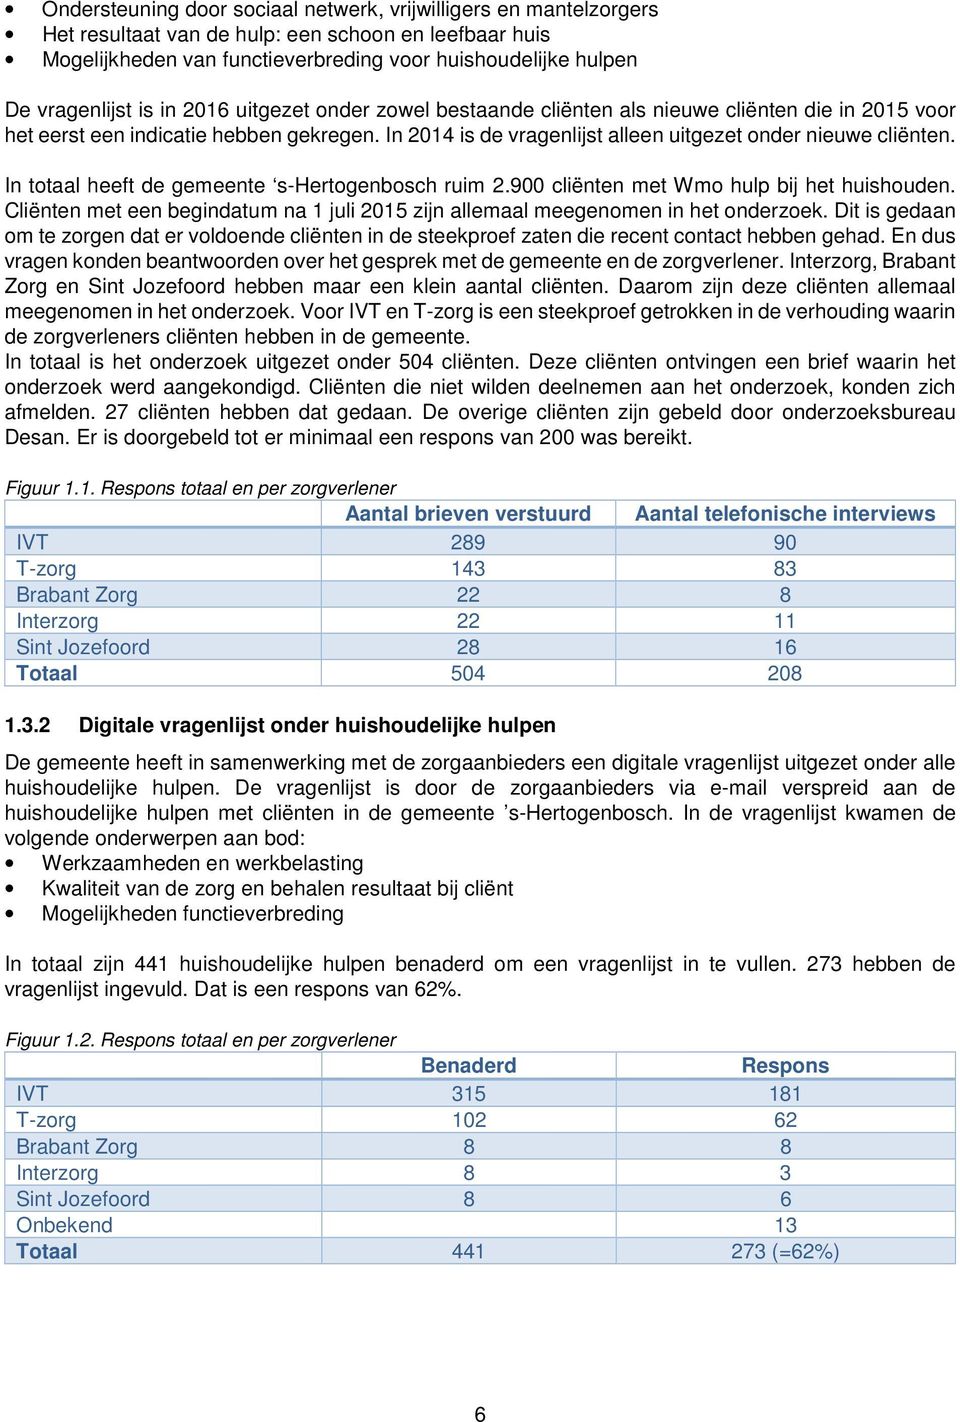 In totaal heeft de gemeente s-hertogenbosch ruim 2.900 cliënten met Wmo hulp bij het huishouden. Cliënten met een begindatum na 1 juli 2015 zijn allemaal meegenomen in het onderzoek.